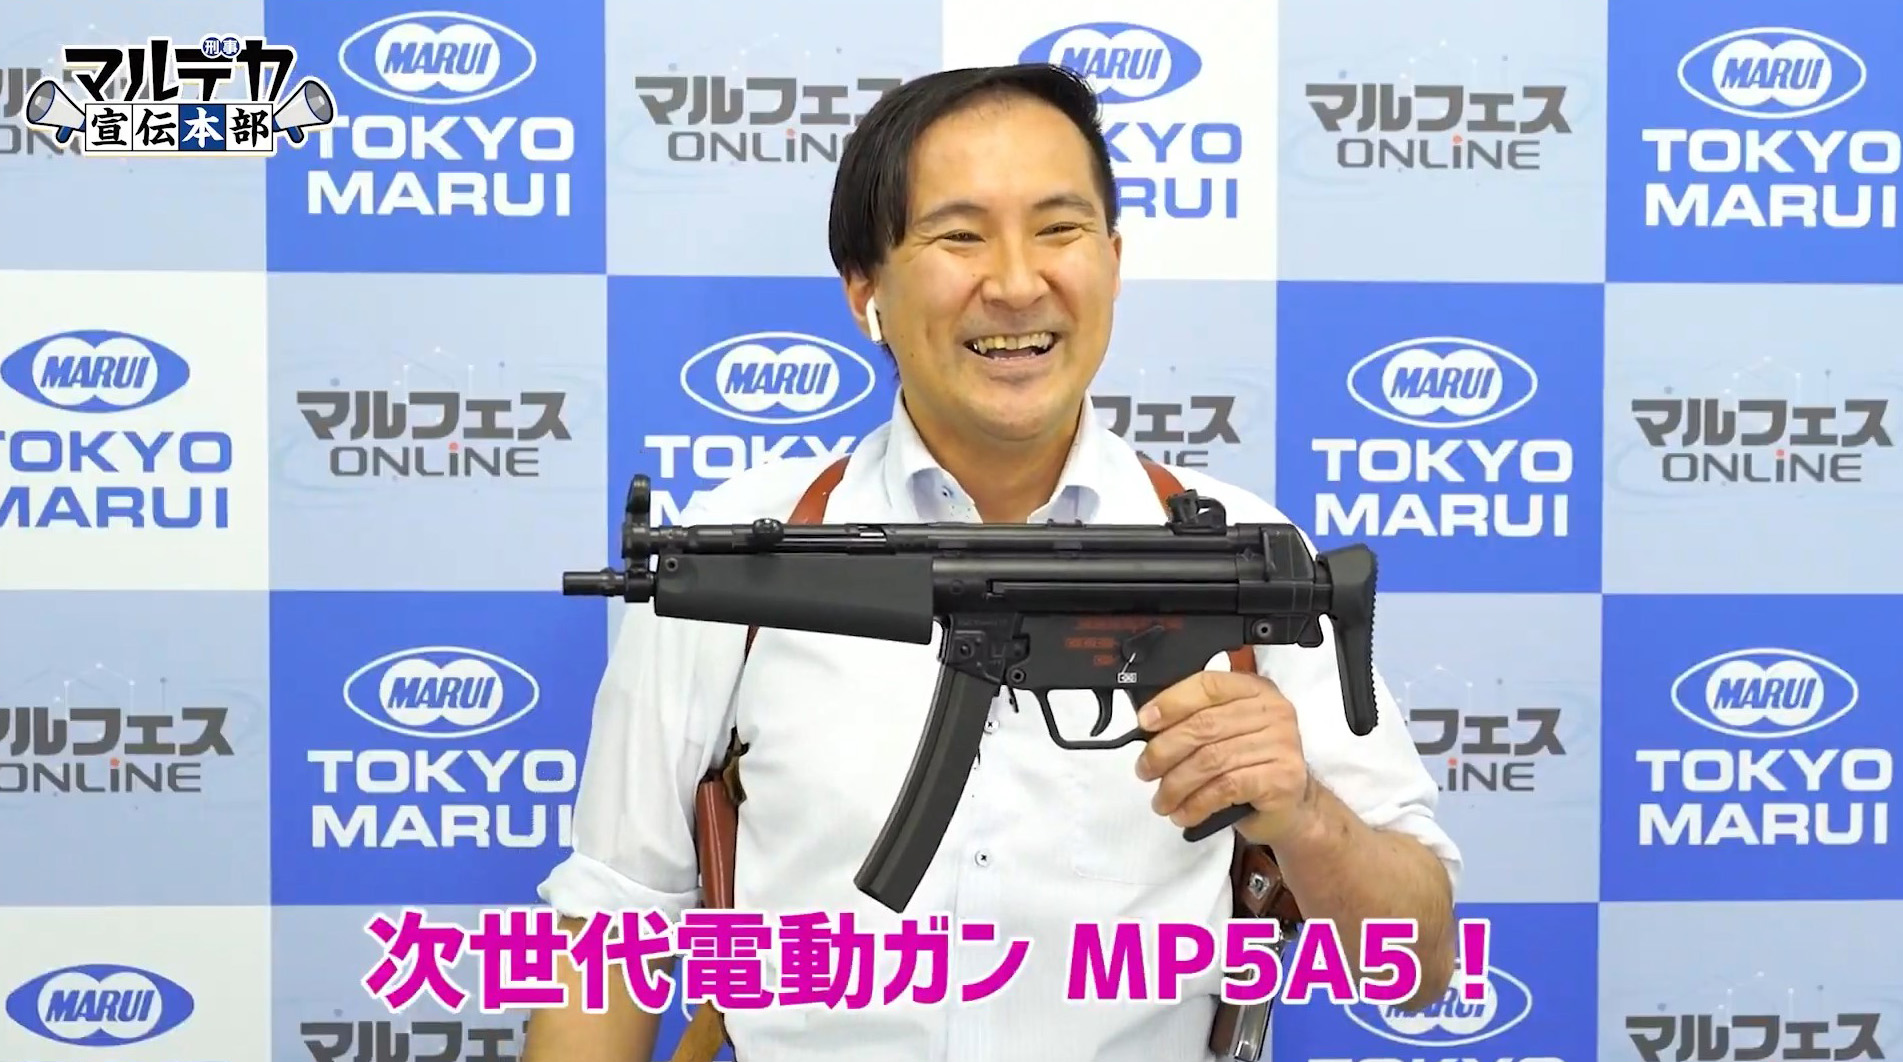 7919円 豊富なギフト 東京マルイ MP5A5 HG 電動ガン